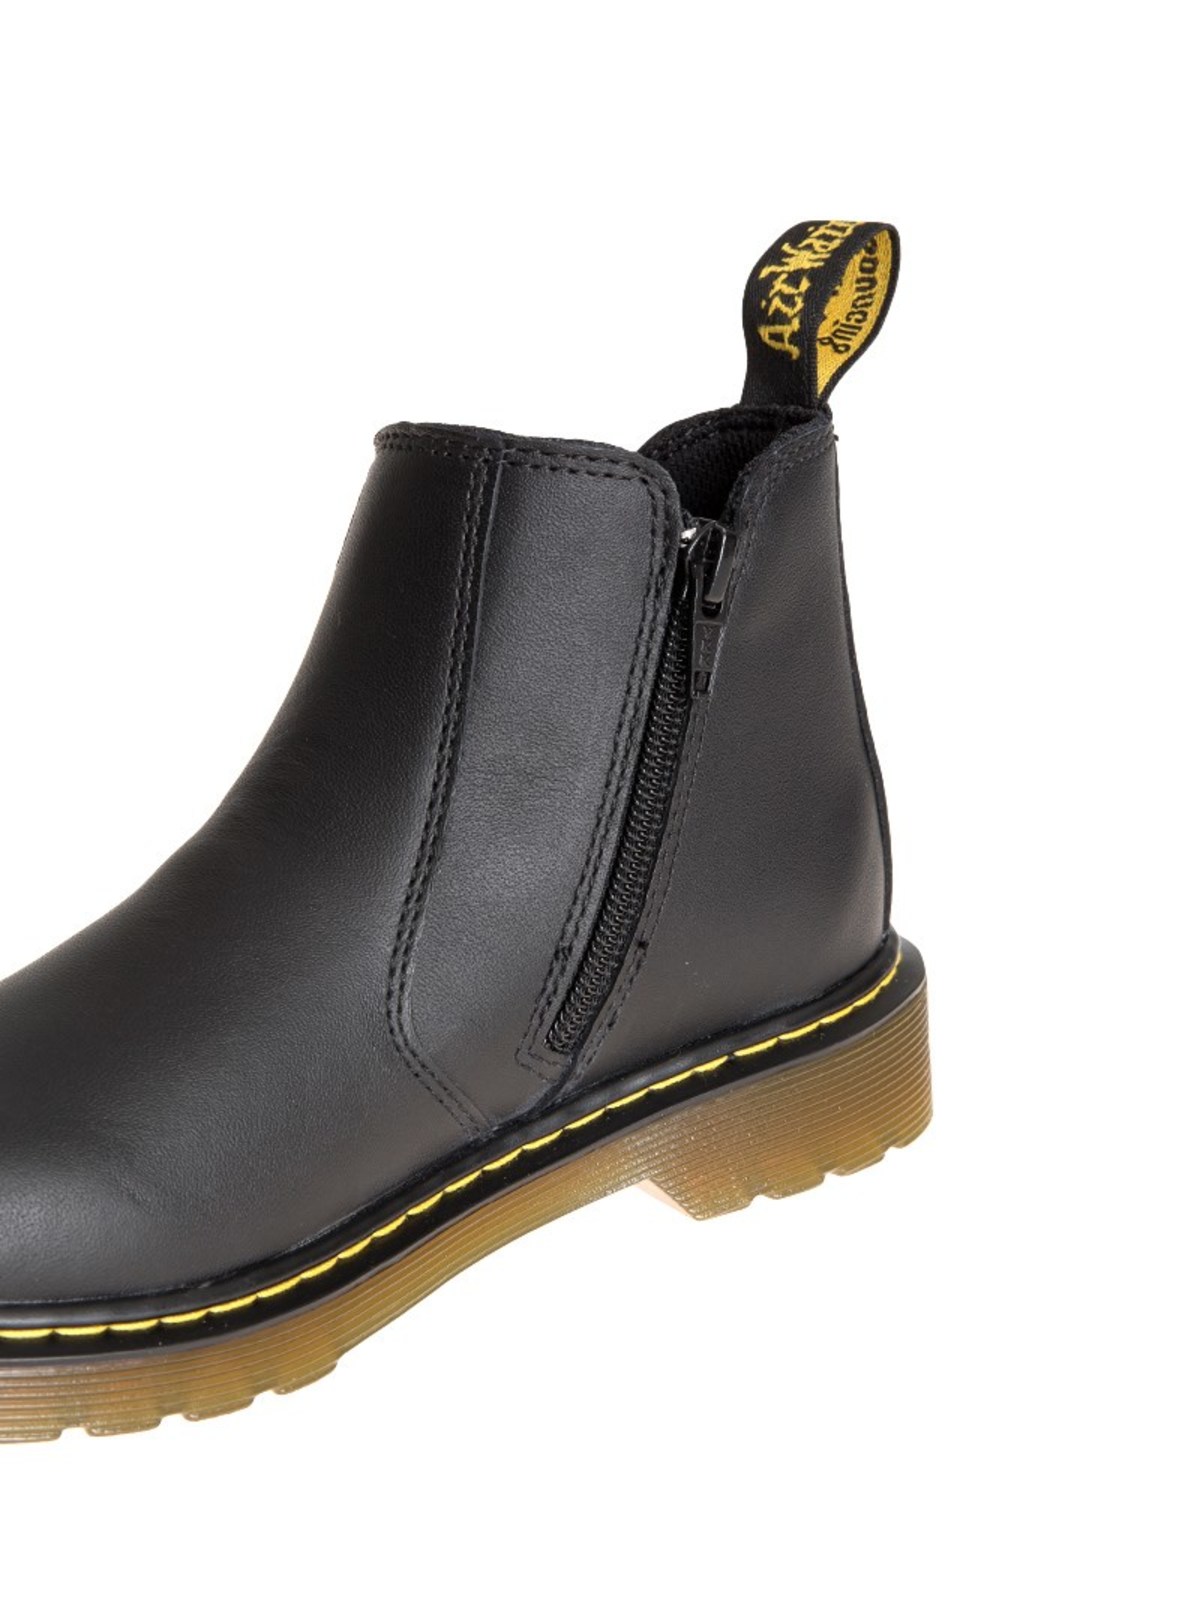 højdepunkt eksperimentel Frugtbar Ankle boots Dr. Martens - Banzai boots - 16708001 | Shop online at iKRIX